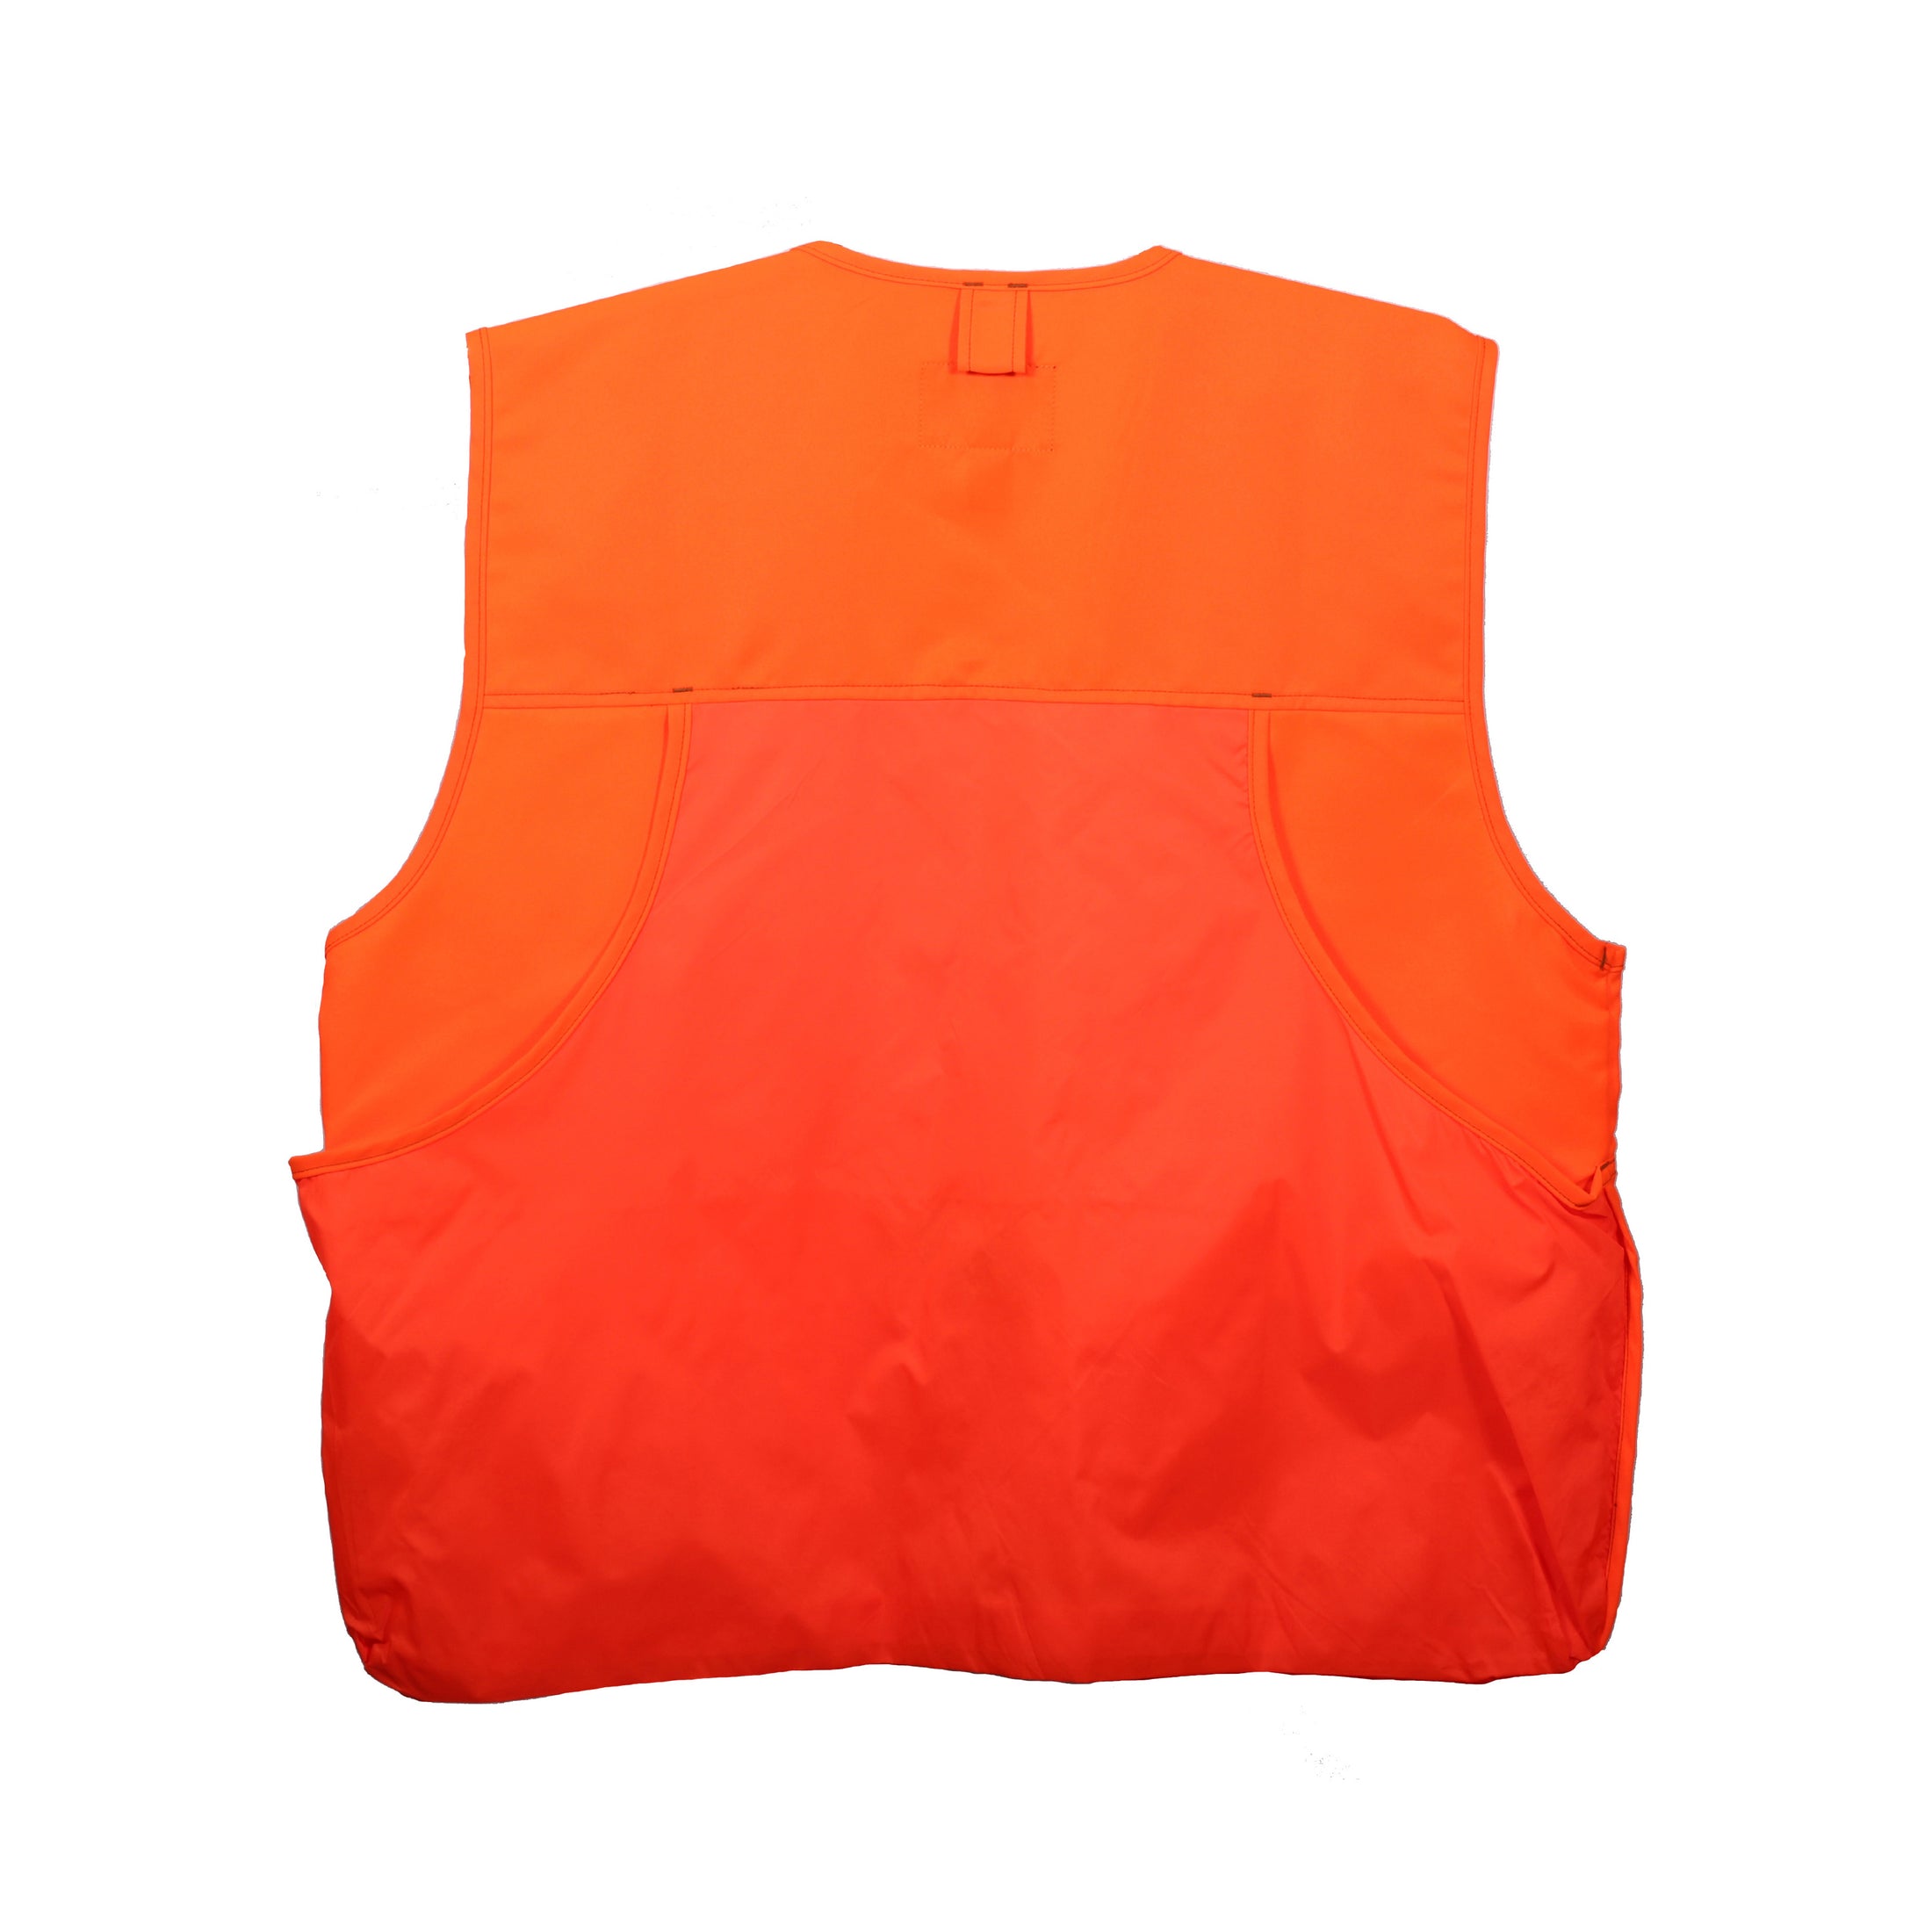 gamehide youth front loader vest back view (blaze orange)